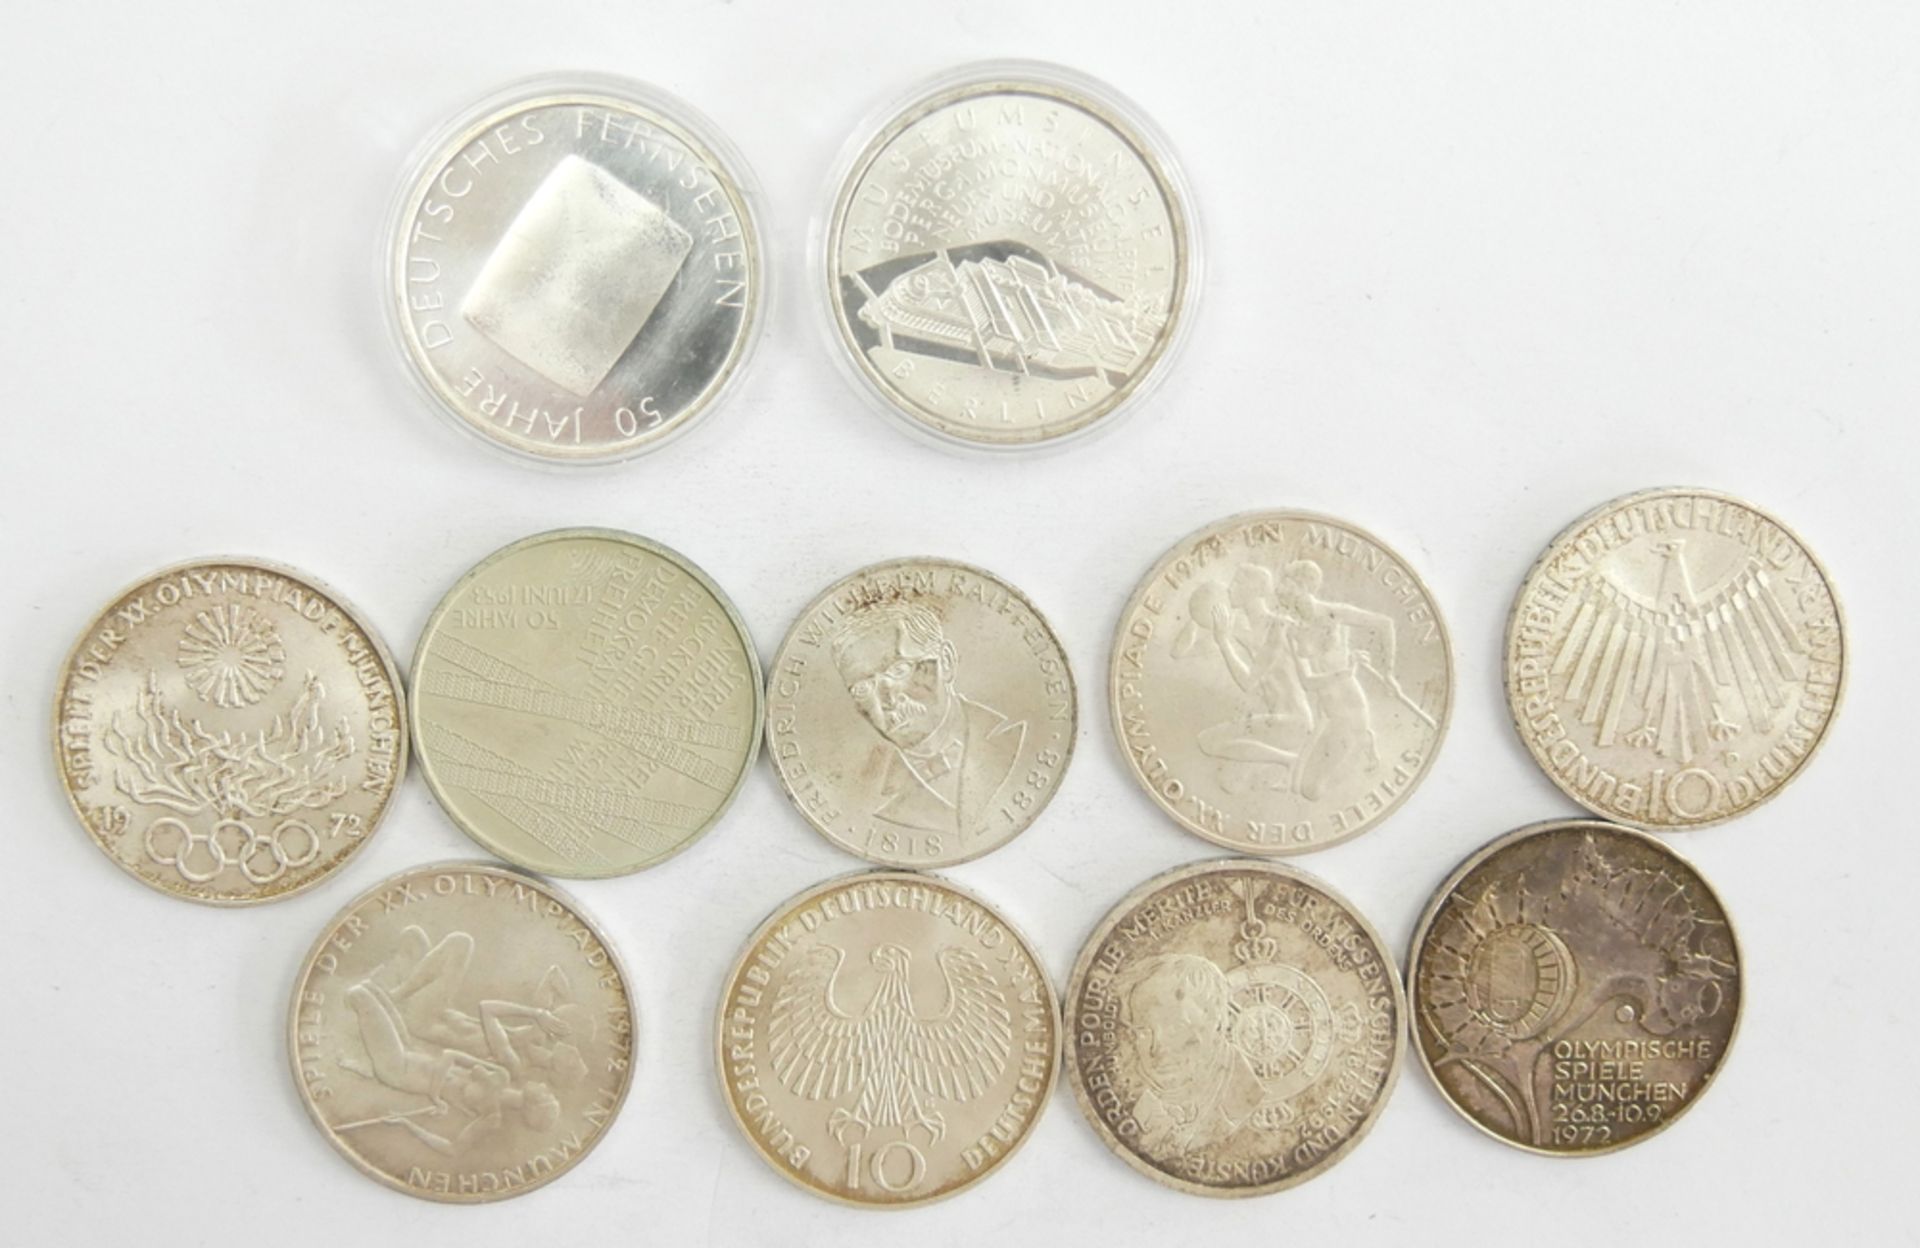 Lot Münzen BRD bestehend aus 7x 10 DM, 1x 5 DM sowie 3x 10 €